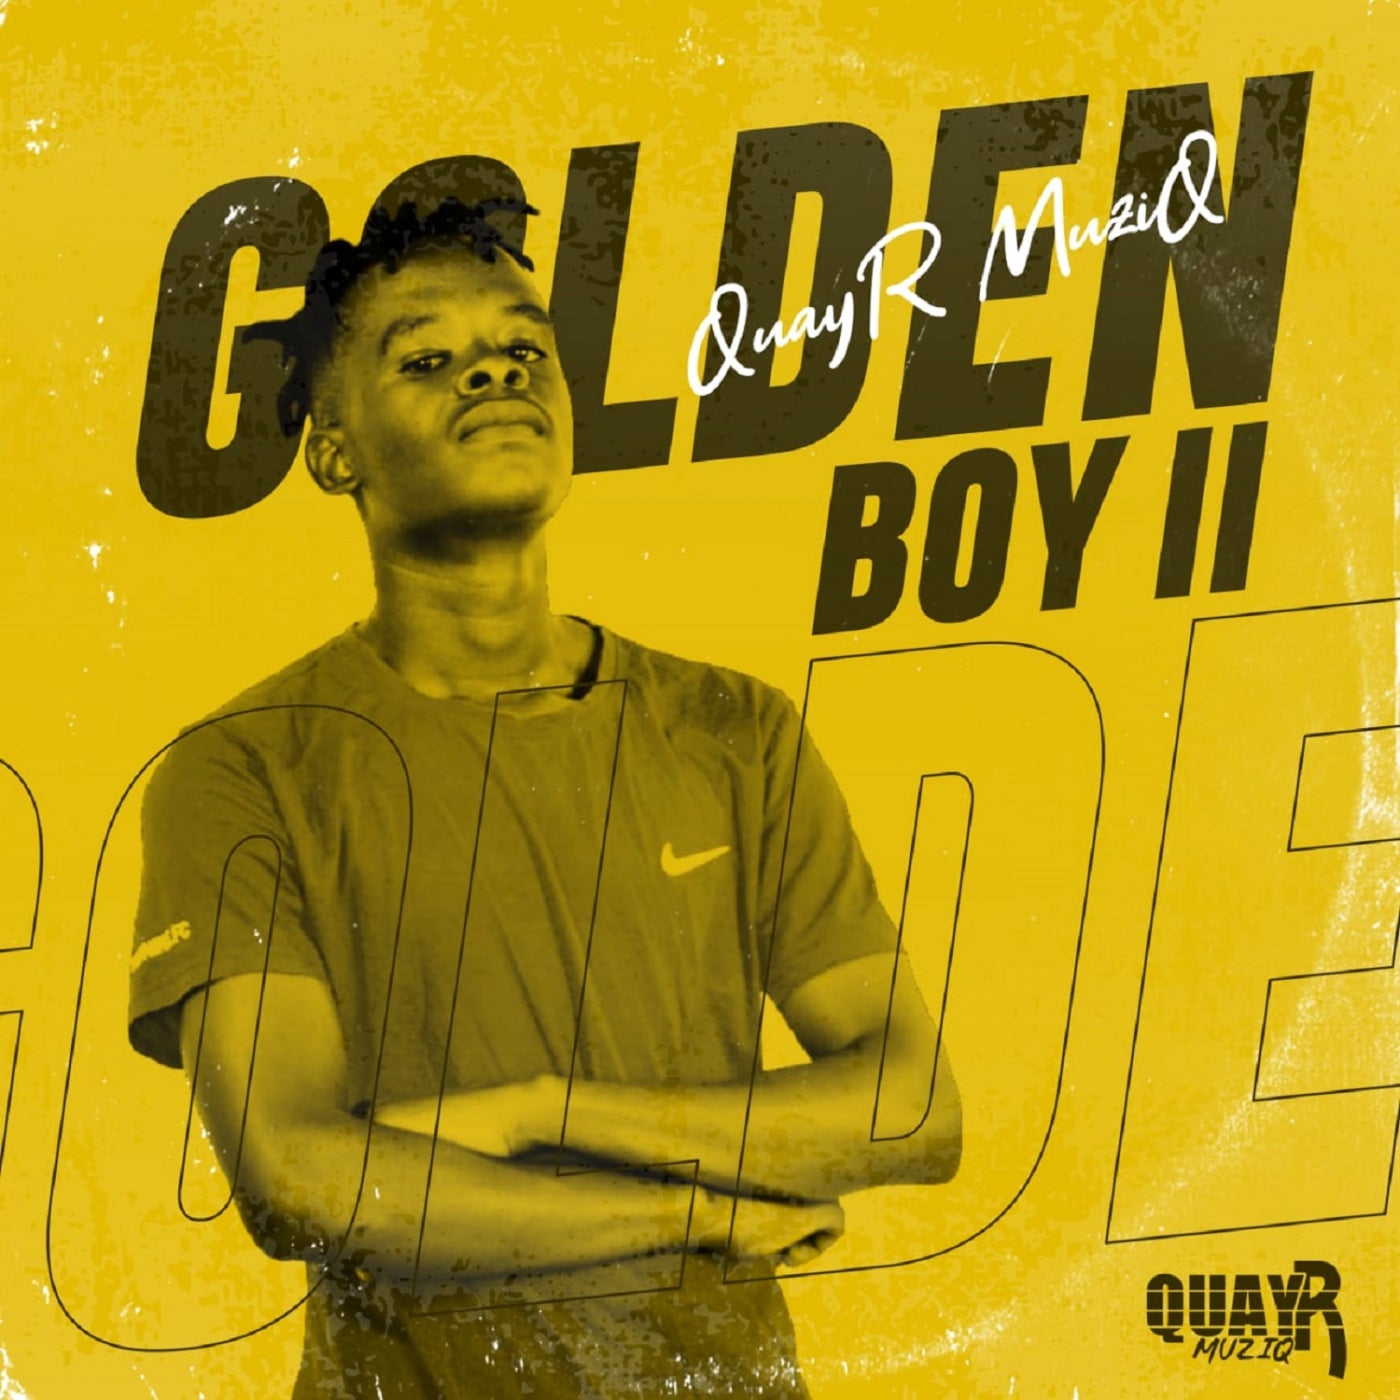 QuayR Musiq - Golden Boy II [EDMA210005]